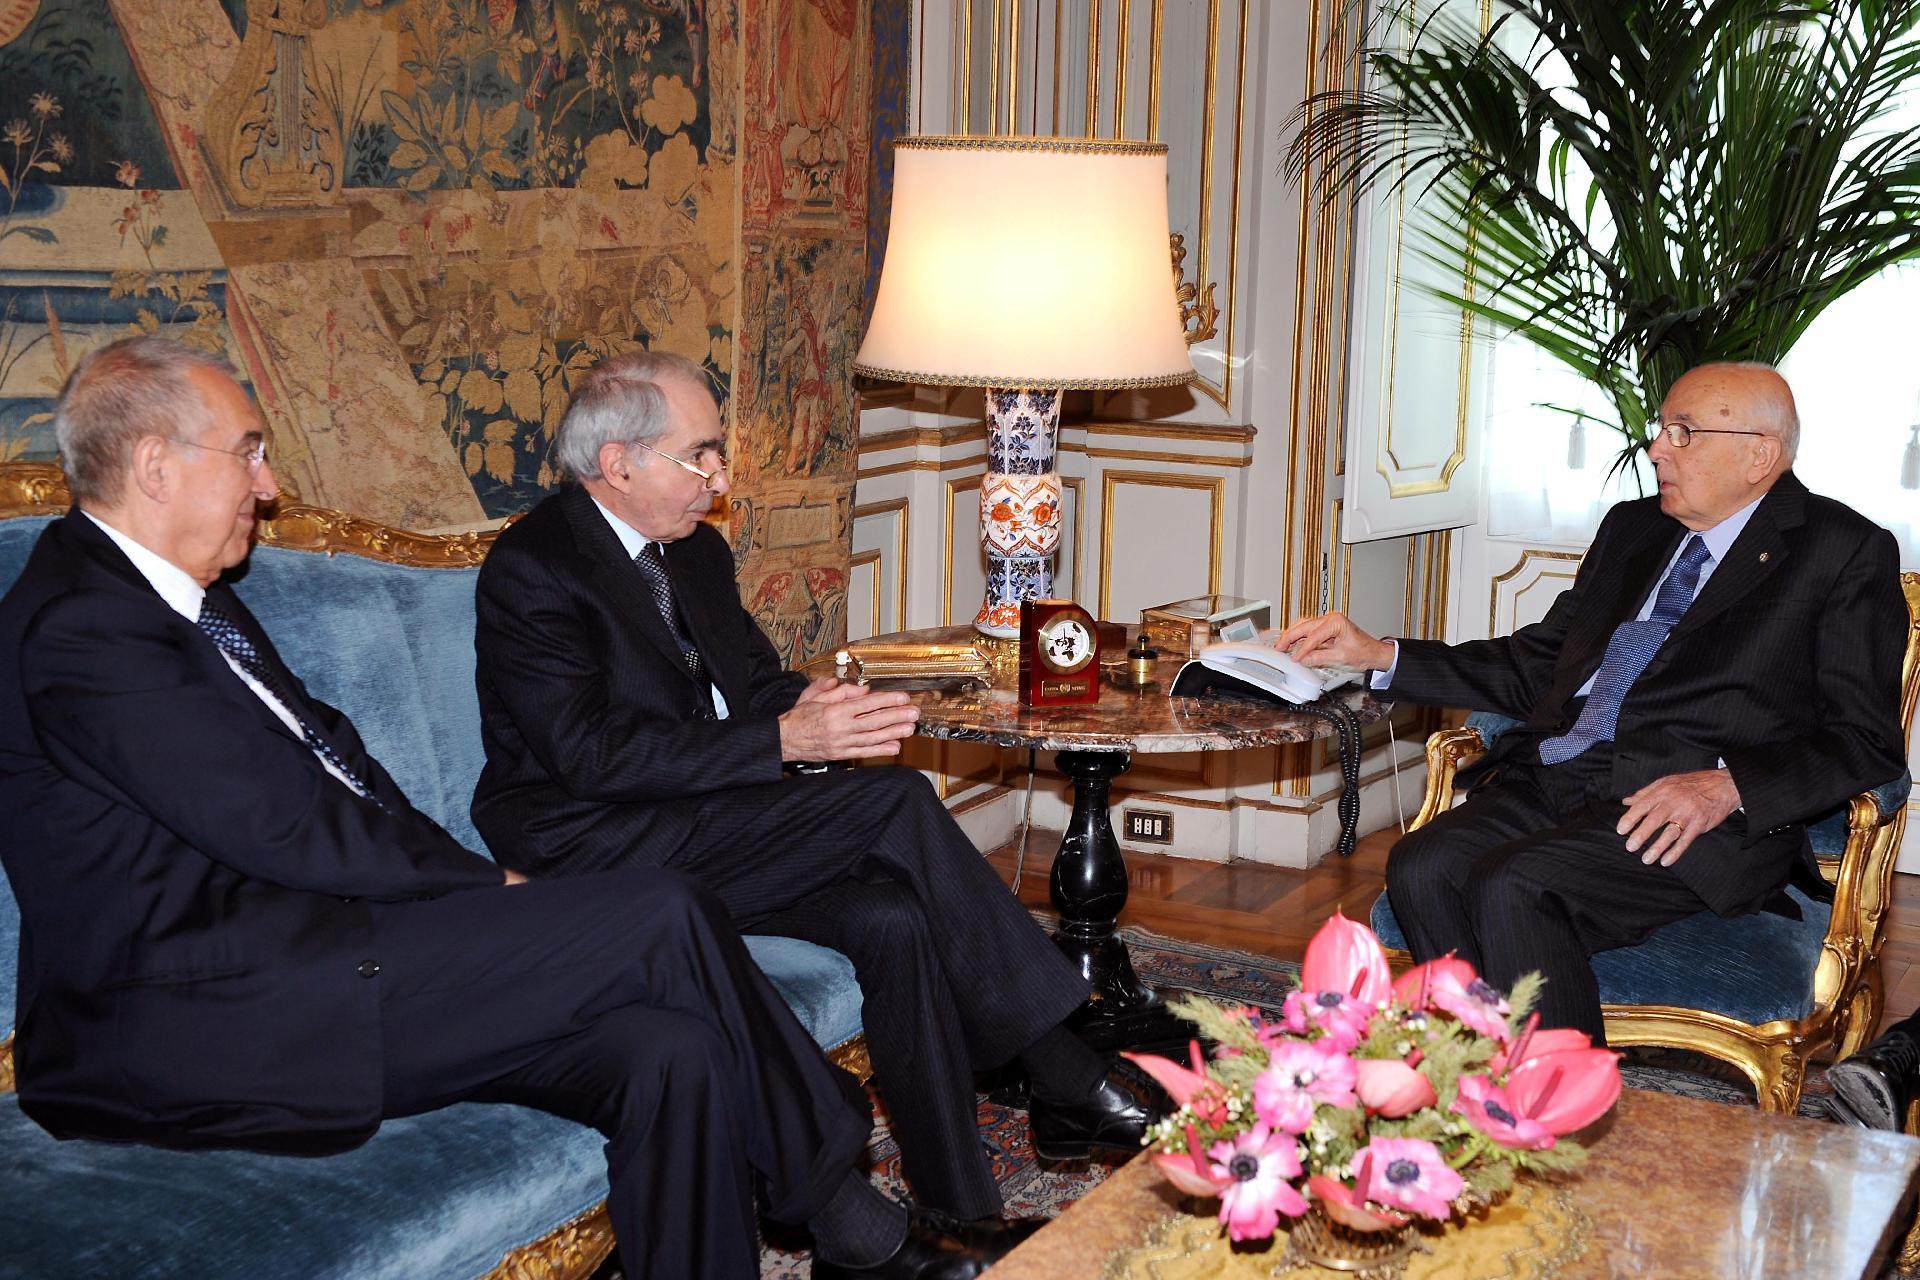 Il Presidente Giorgio Napolitano con il Prof. Giuliano Amato durante i colloqui, in occasione dell'incontro al Quirinale